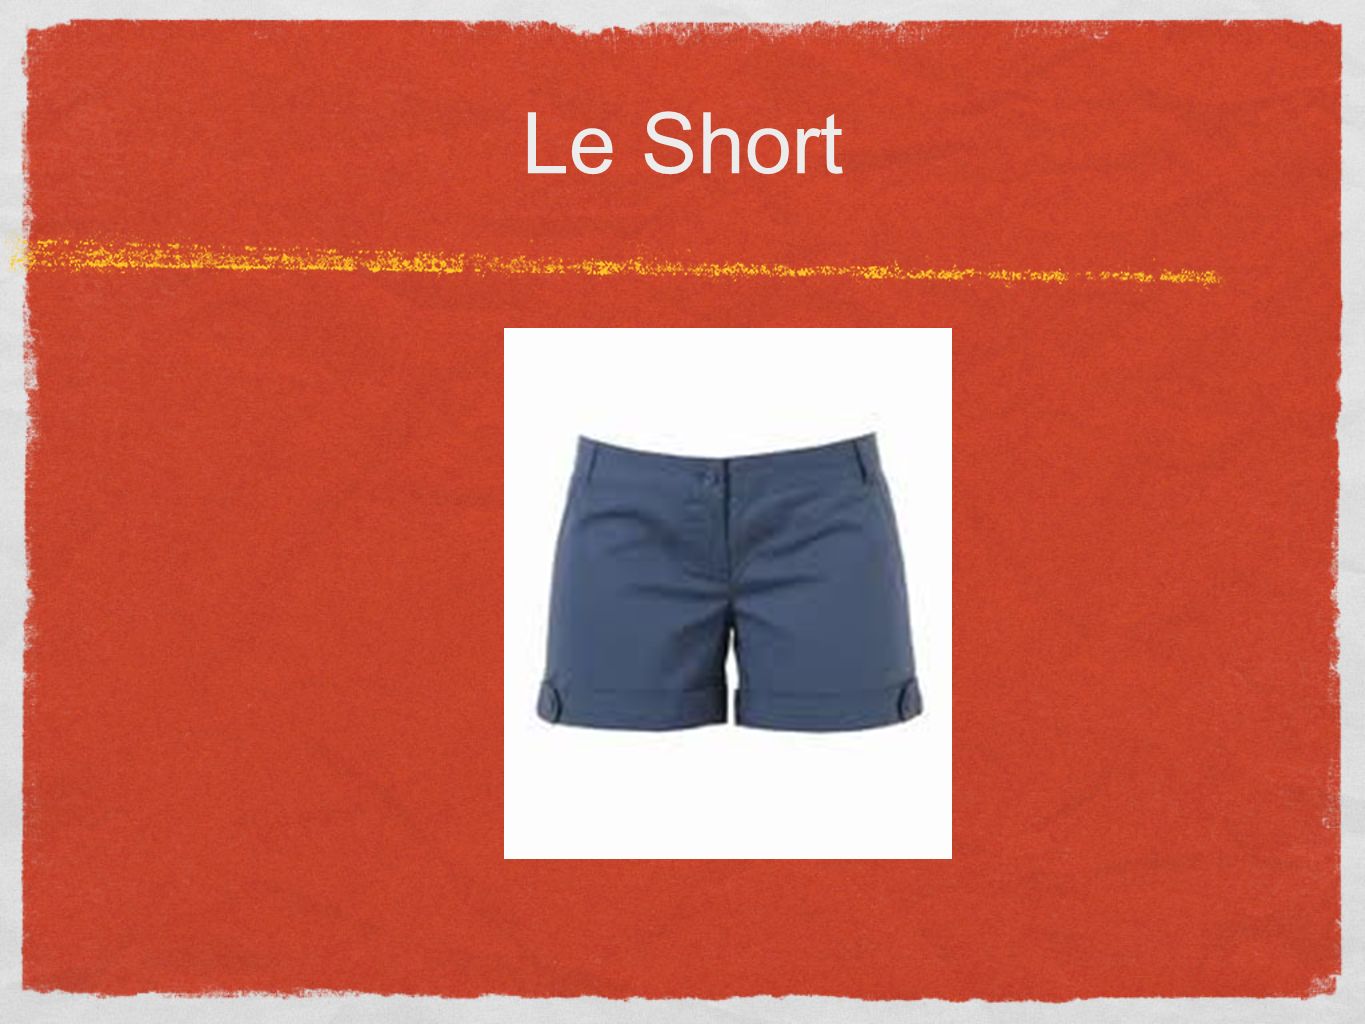 Le Short